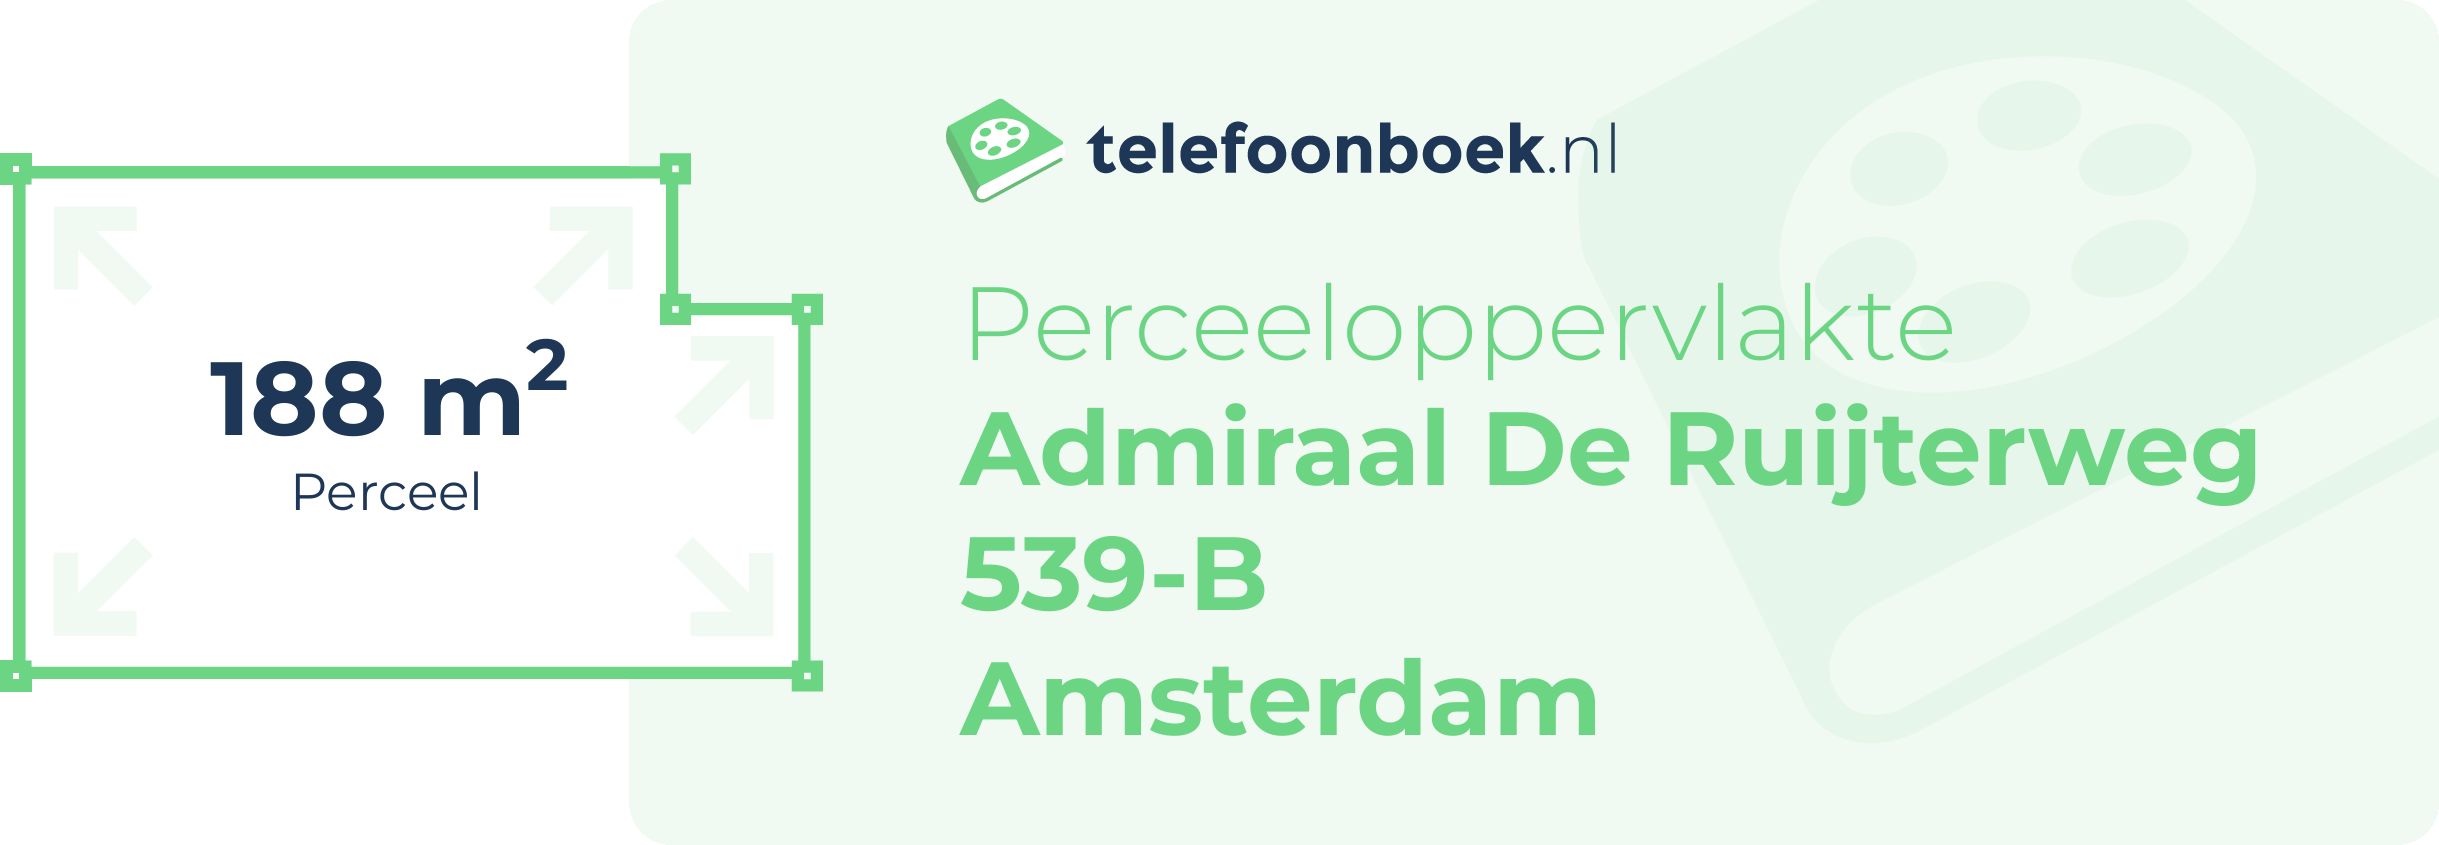 Perceeloppervlakte Admiraal De Ruijterweg 539-B Amsterdam